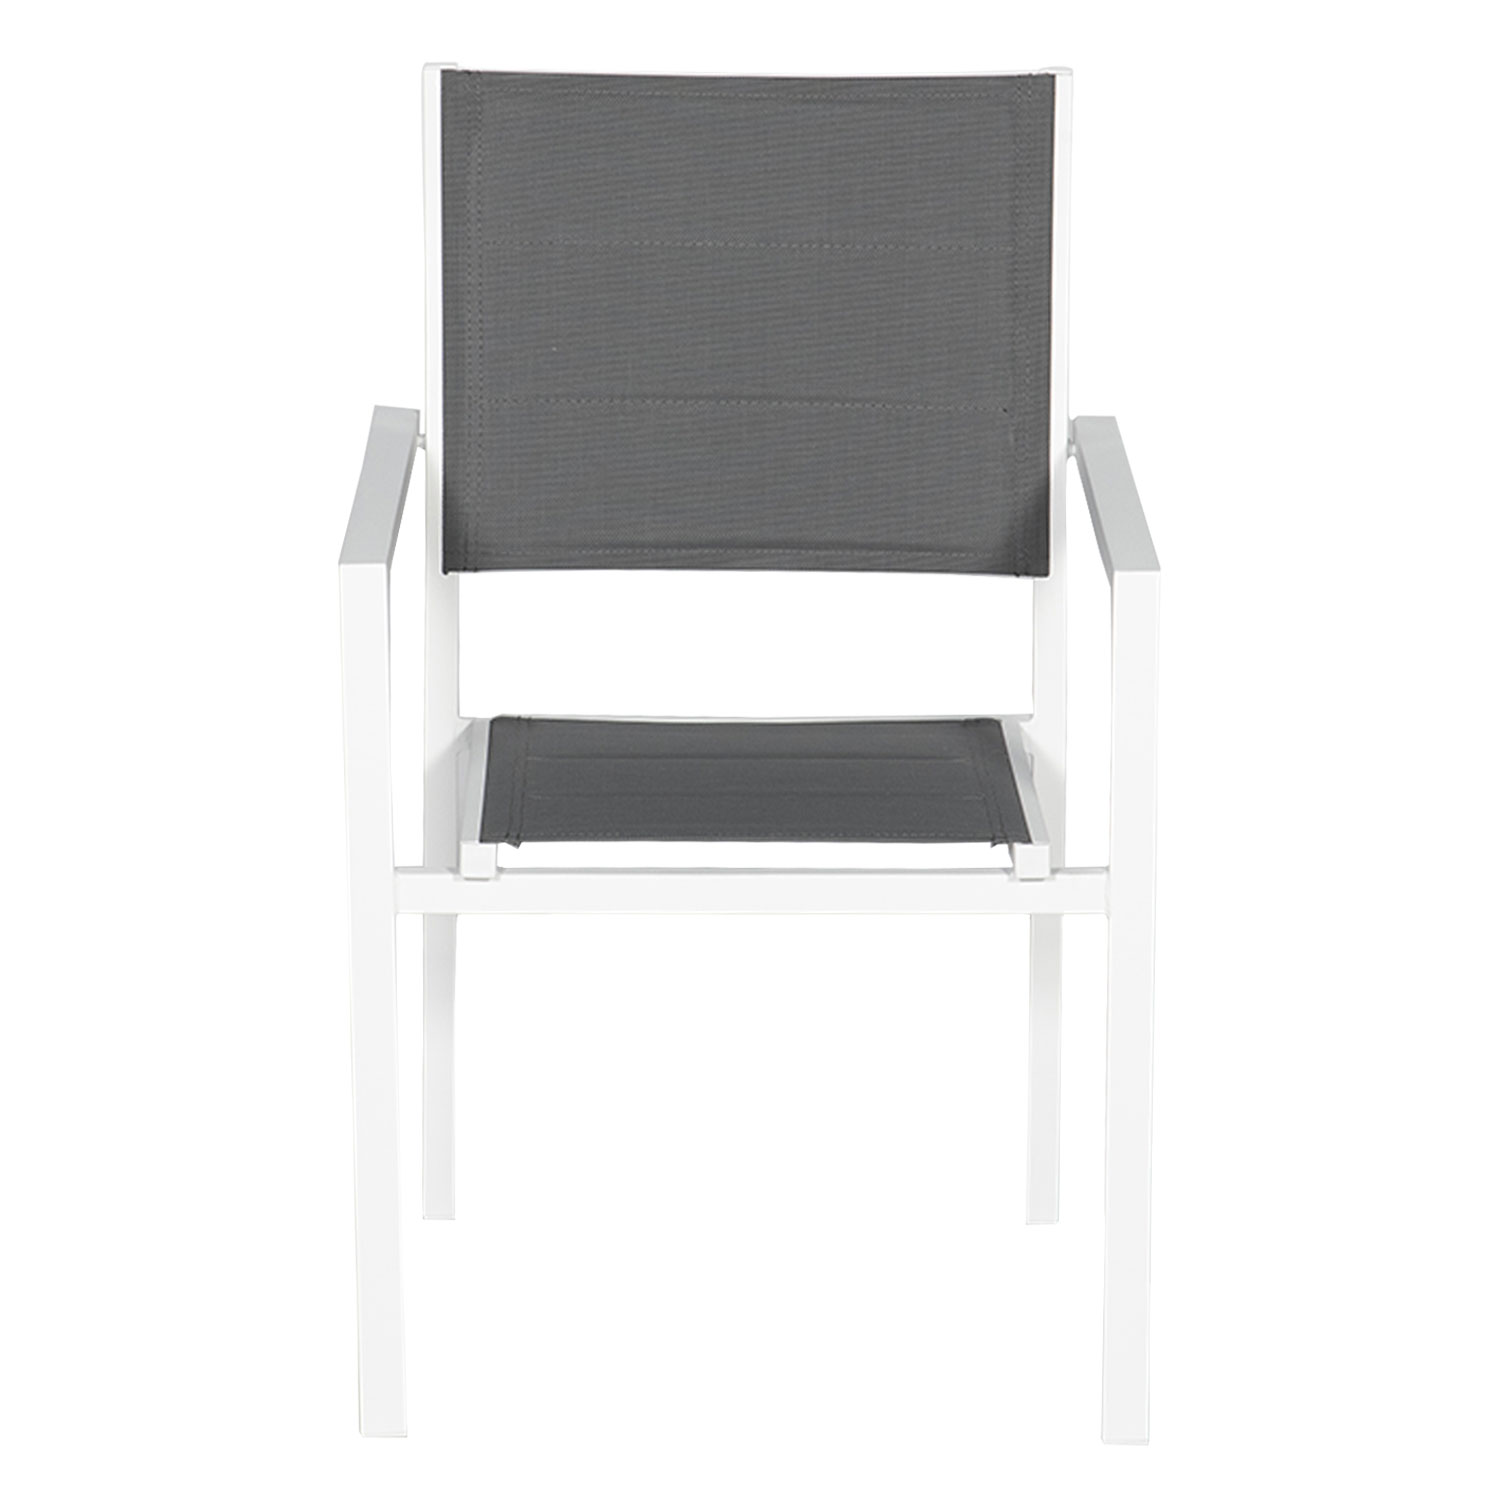 Set van 8 met wit aluminium beklede stoelen - grijs textilene